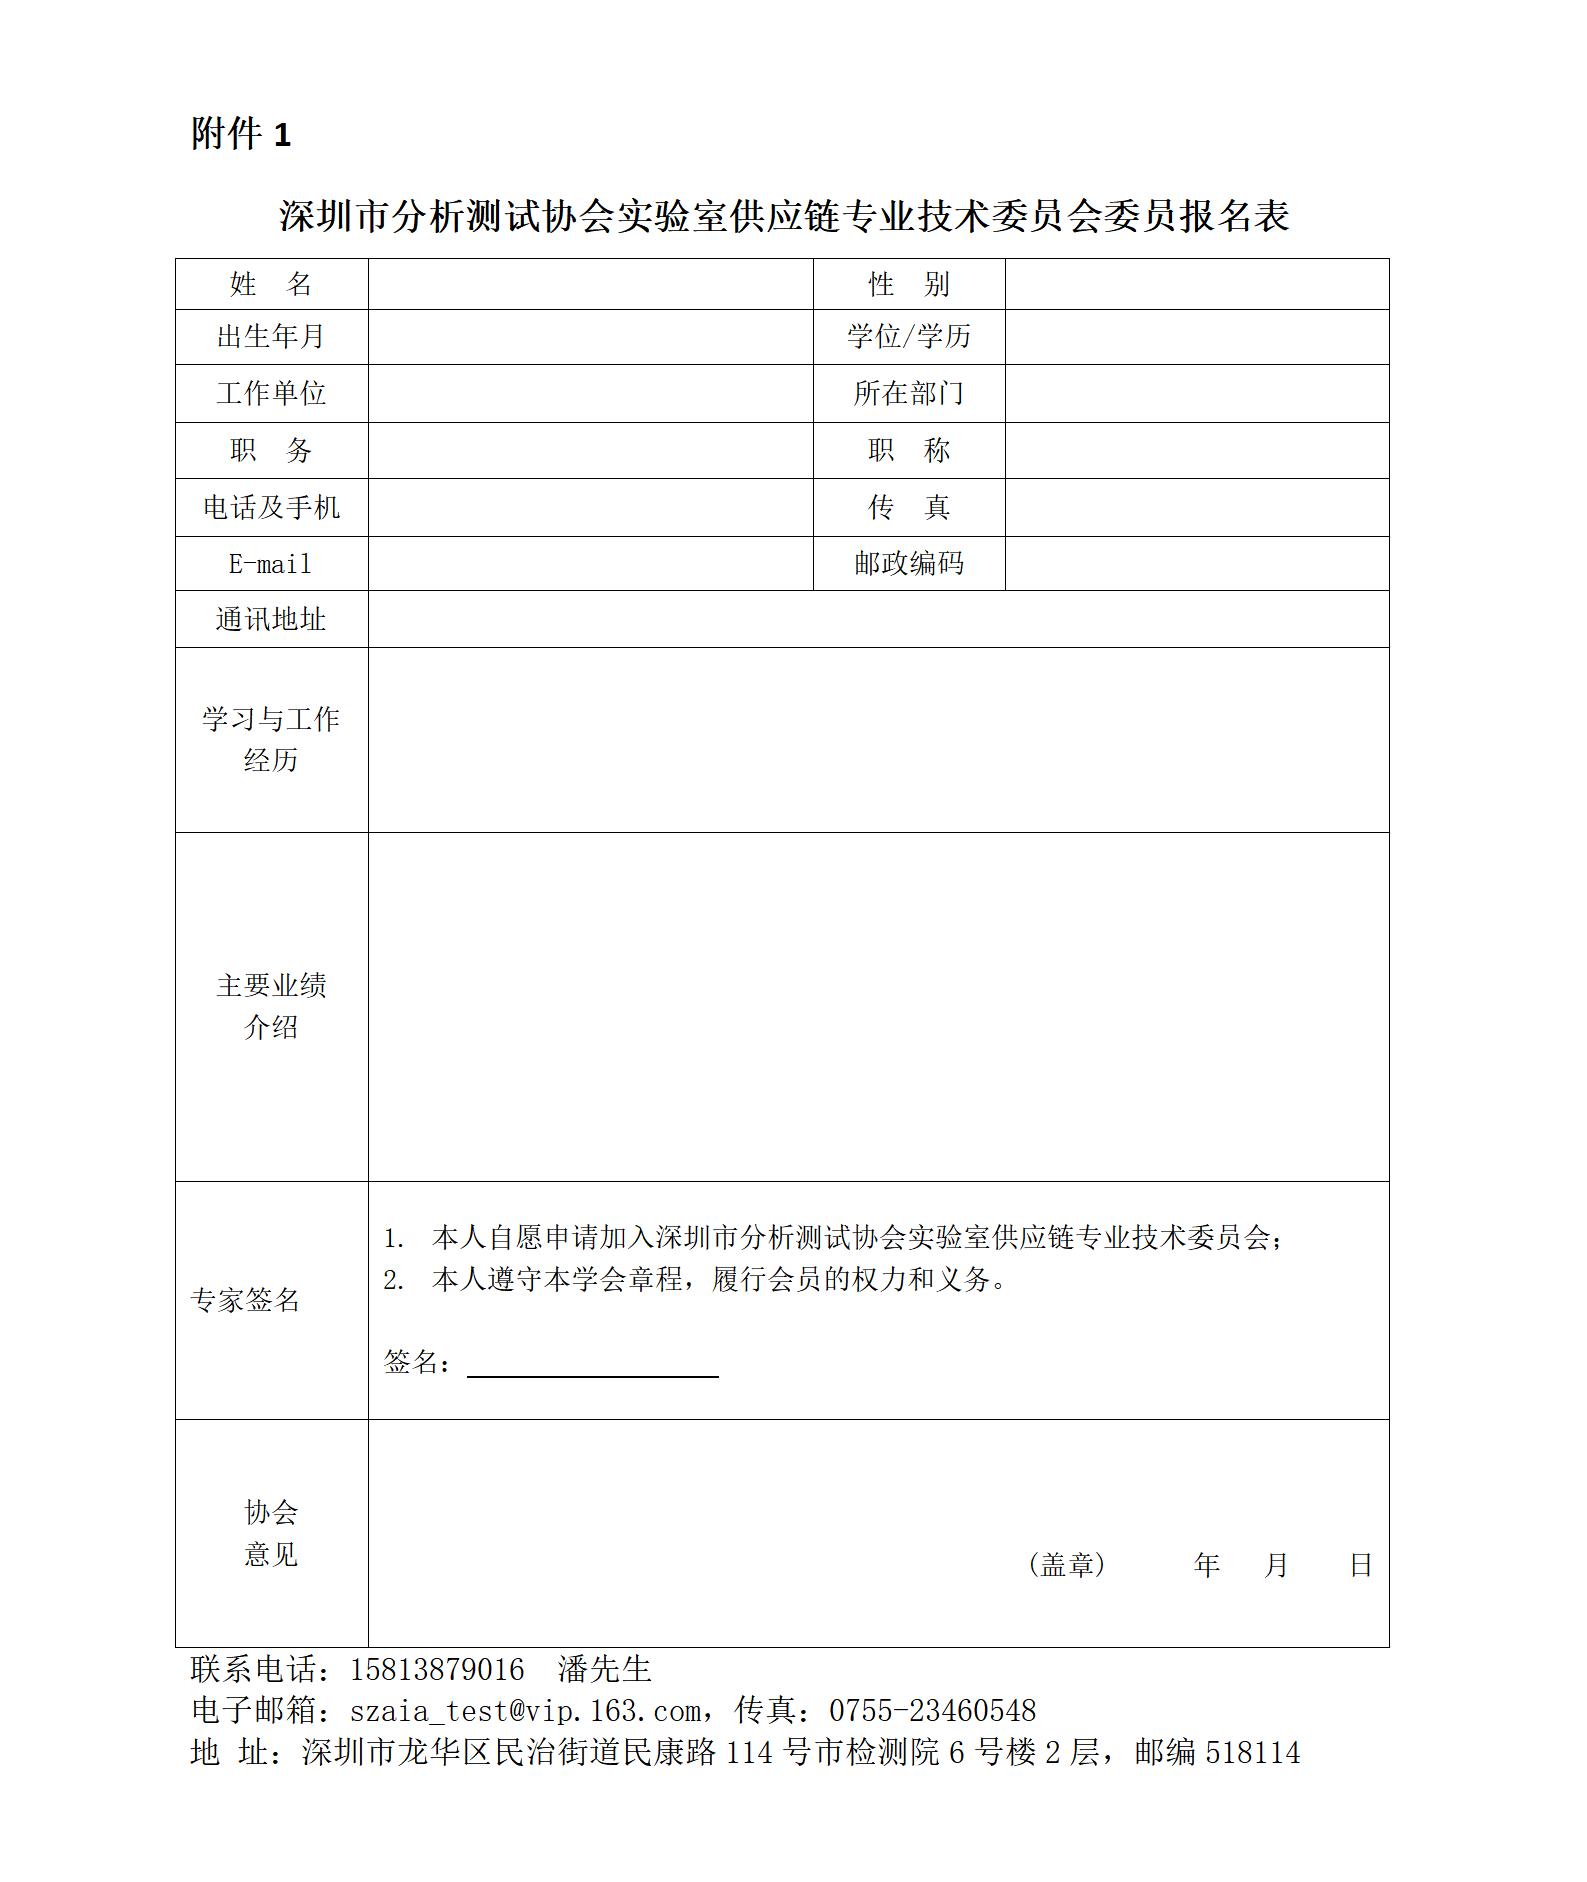 附件1 深圳市分析测试协会实验室供应链专业技术委员会委员报名表_01.jpg